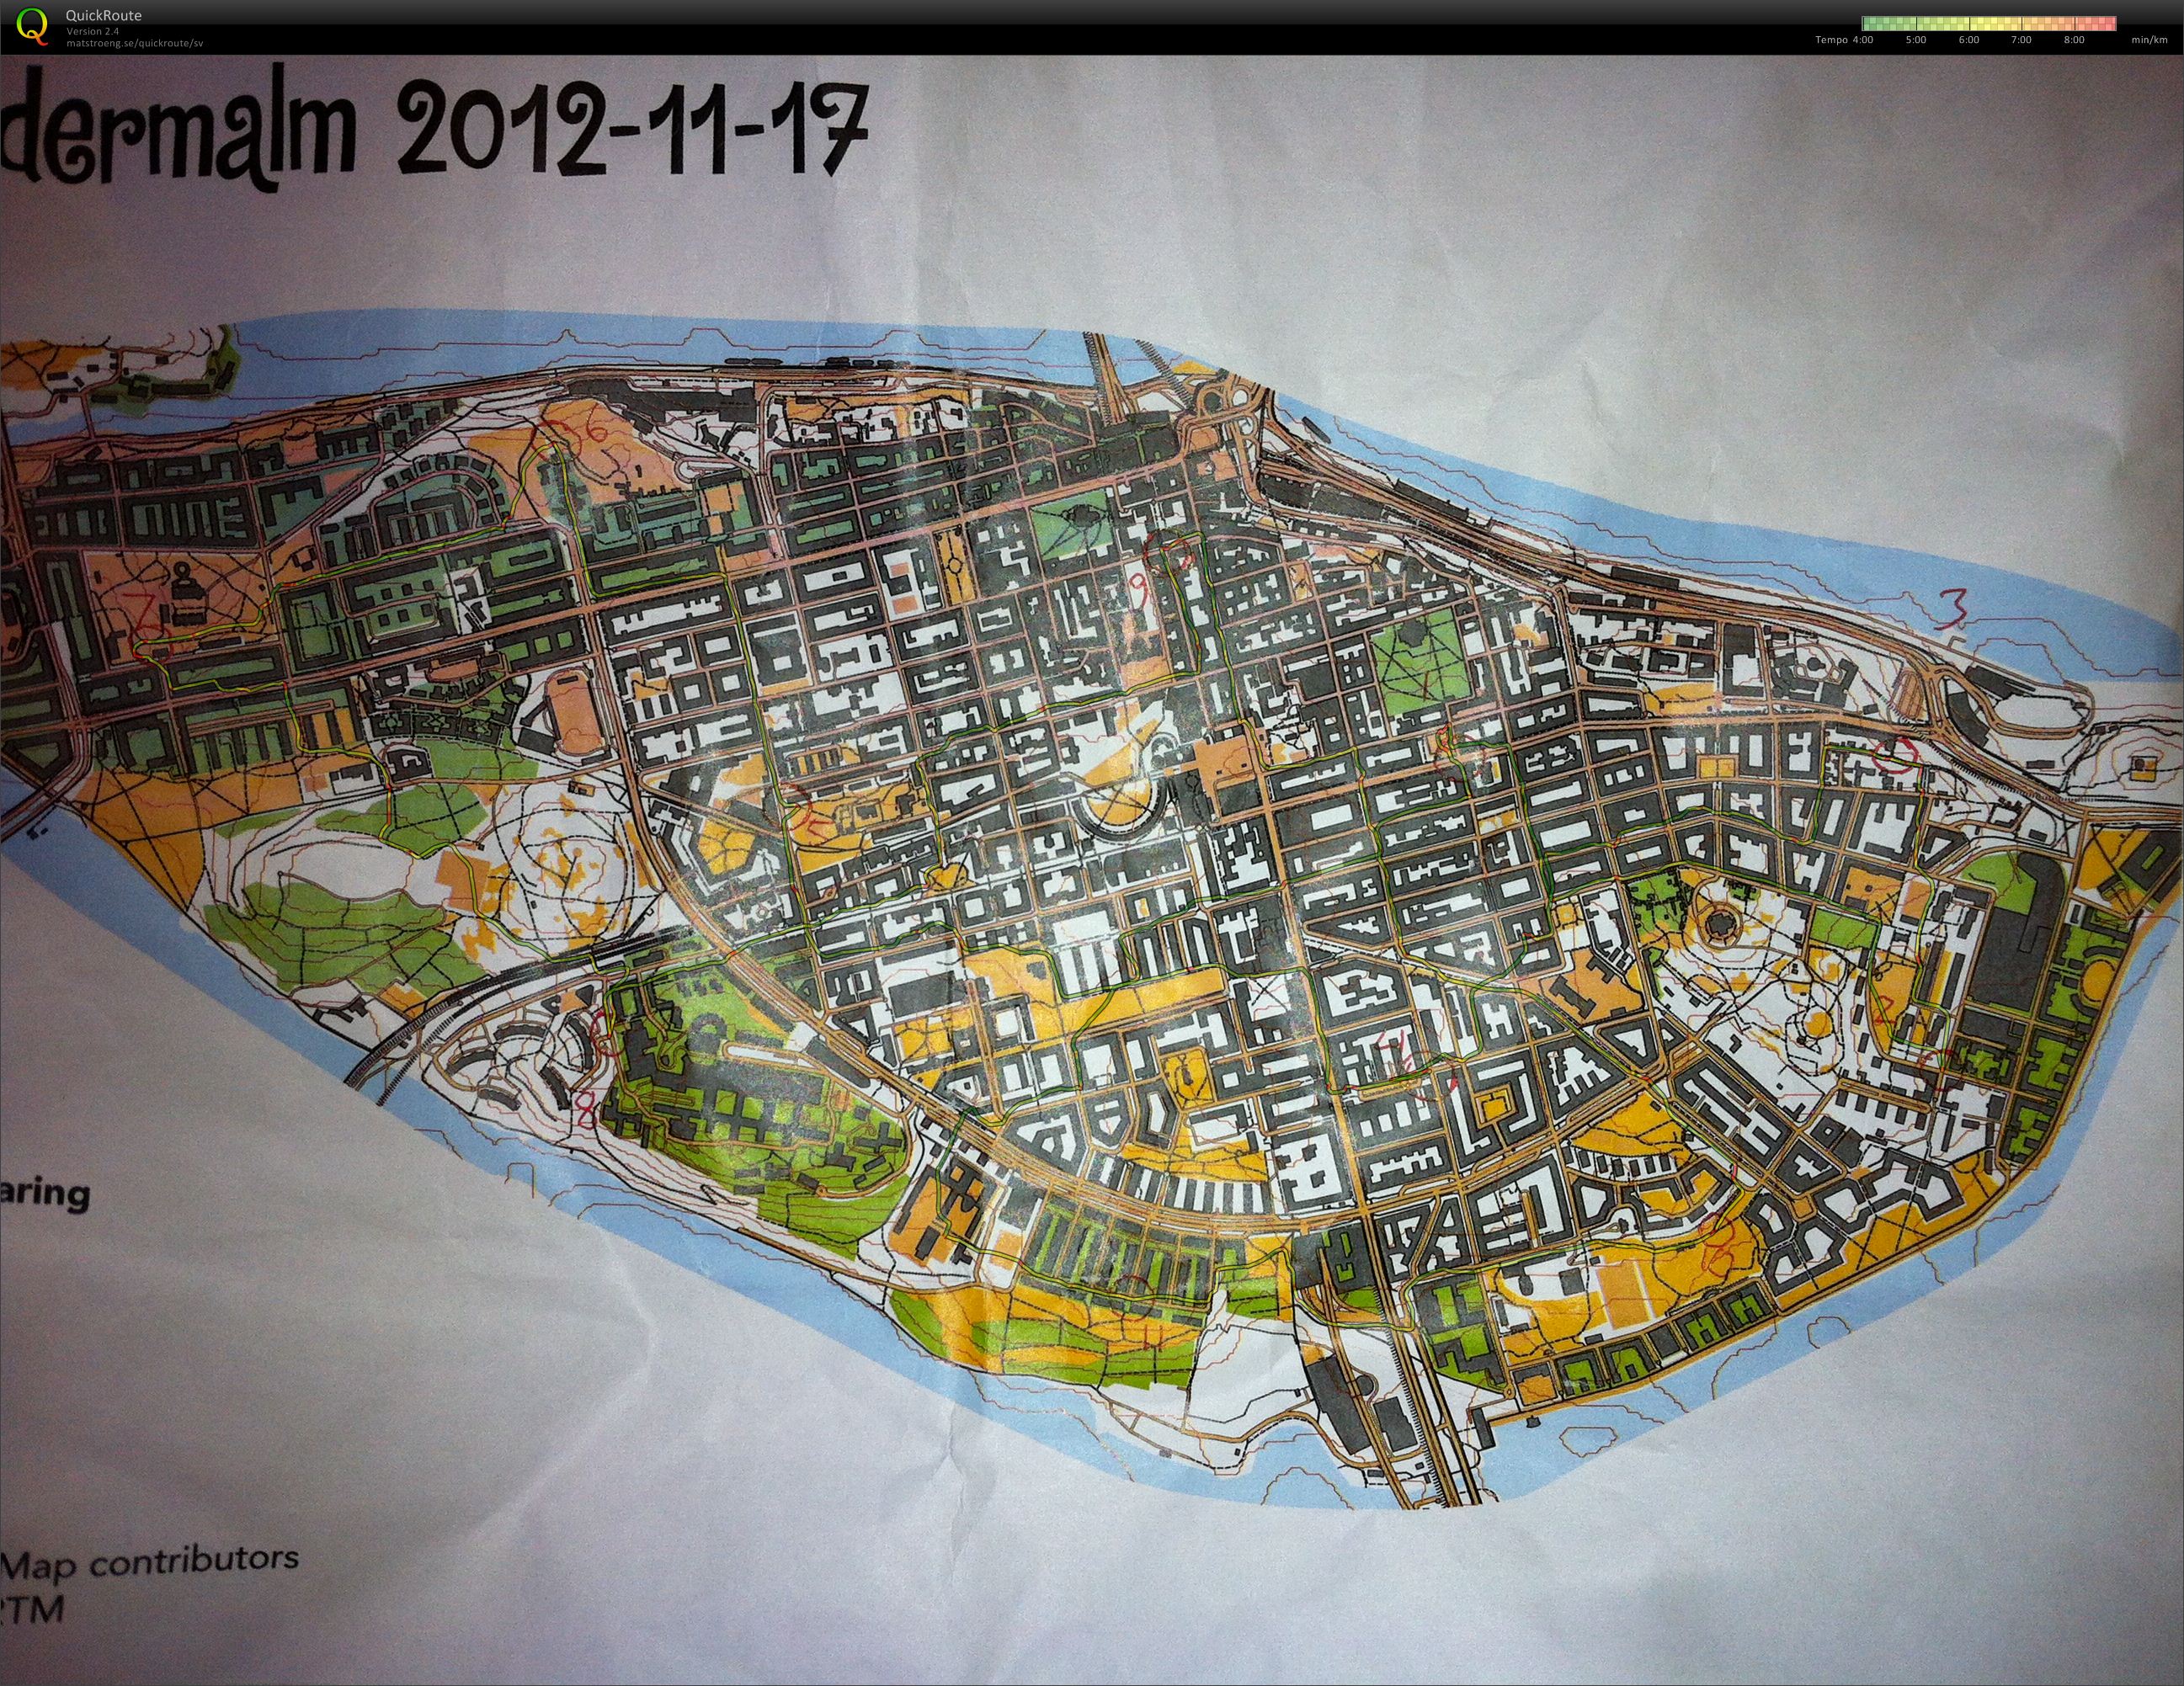 Södermalm (2012-11-18)